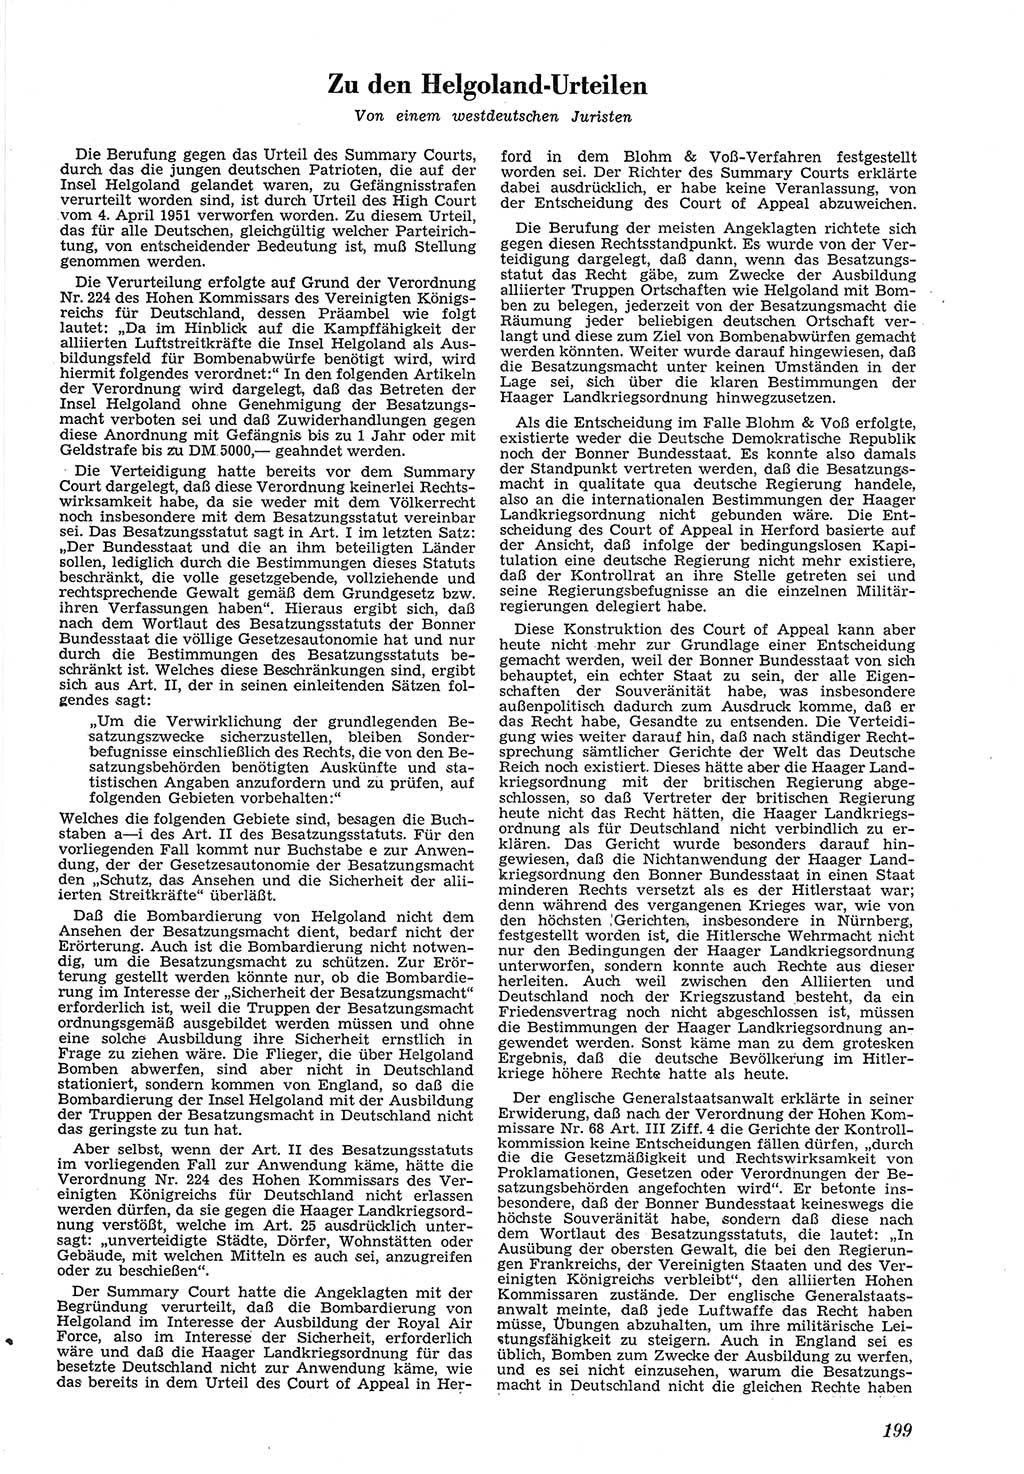 Neue Justiz (NJ), Zeitschrift für Recht und Rechtswissenschaft [Deutsche Demokratische Republik (DDR)], 5. Jahrgang 1951, Seite 199 (NJ DDR 1951, S. 199)